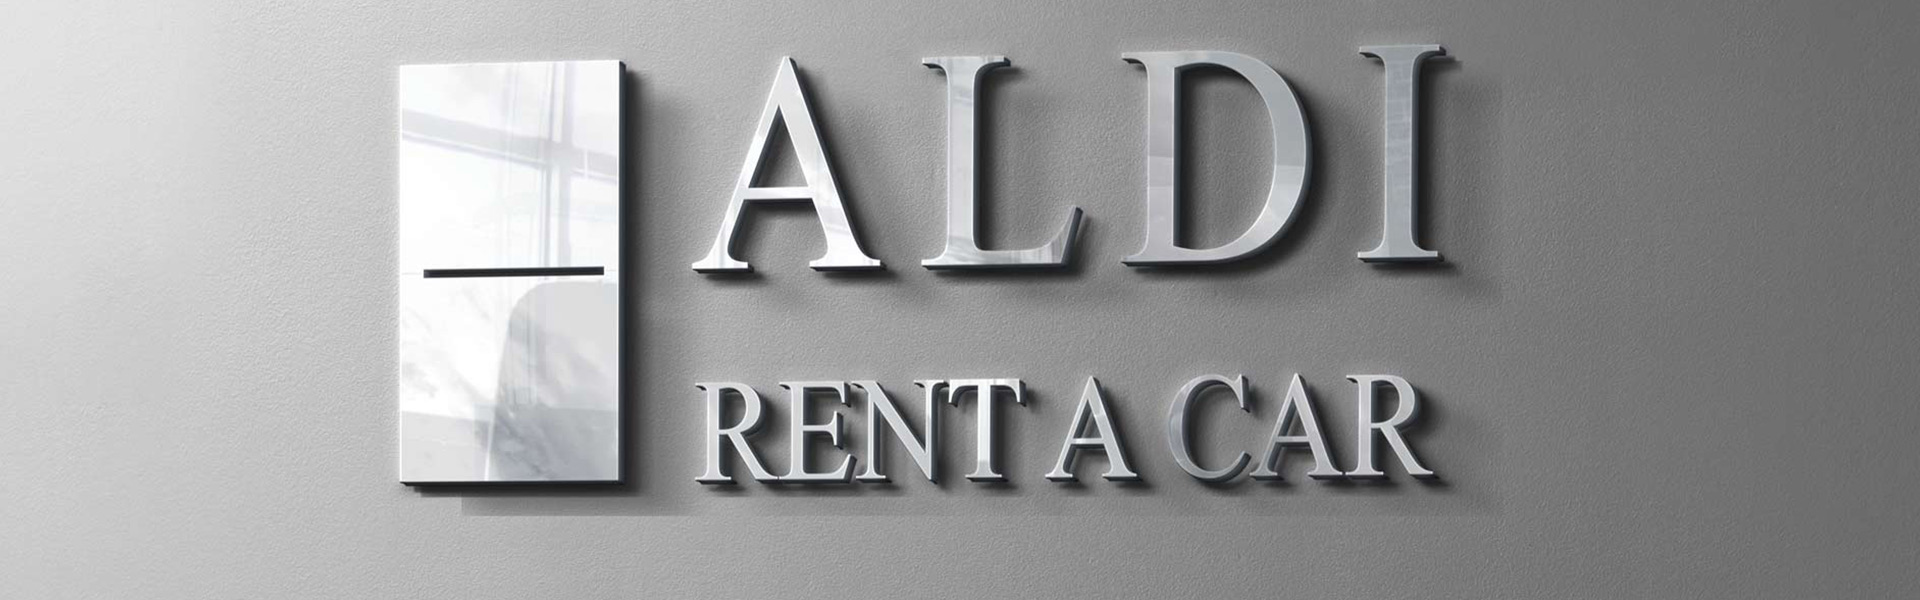 Rent a Car Beograd ALDI | Car Rental Riyadh